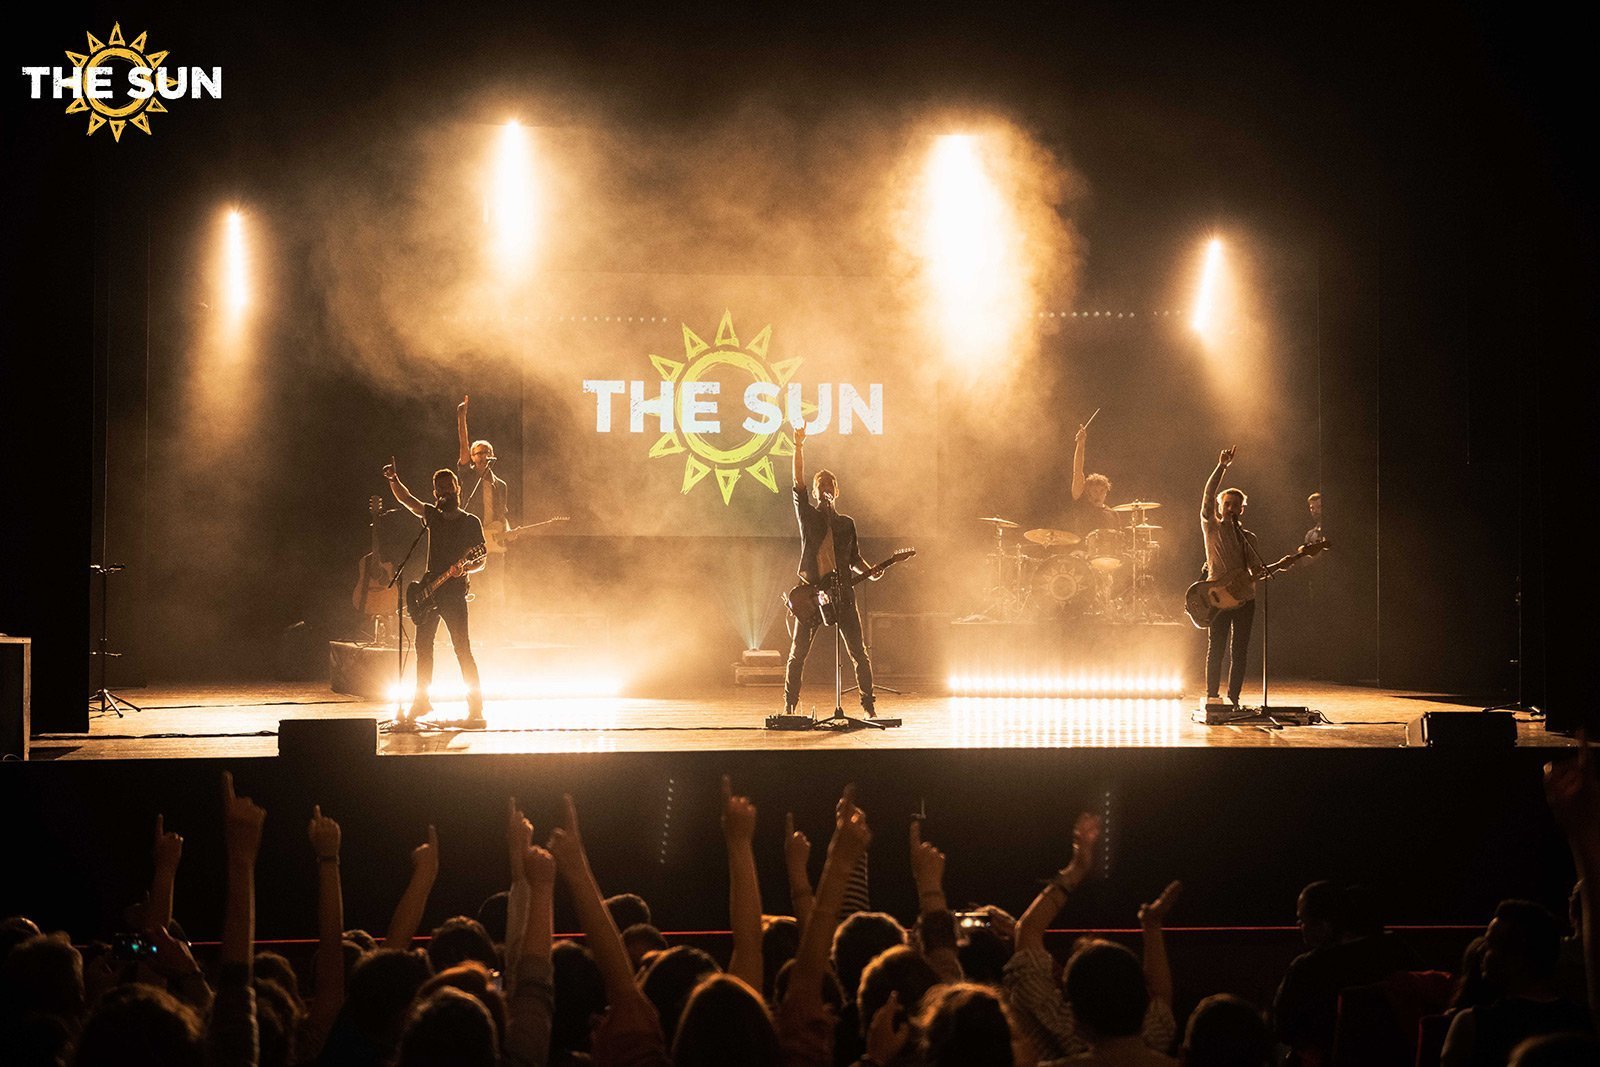 the sun rock band live rovigo ogni benedetto giorno